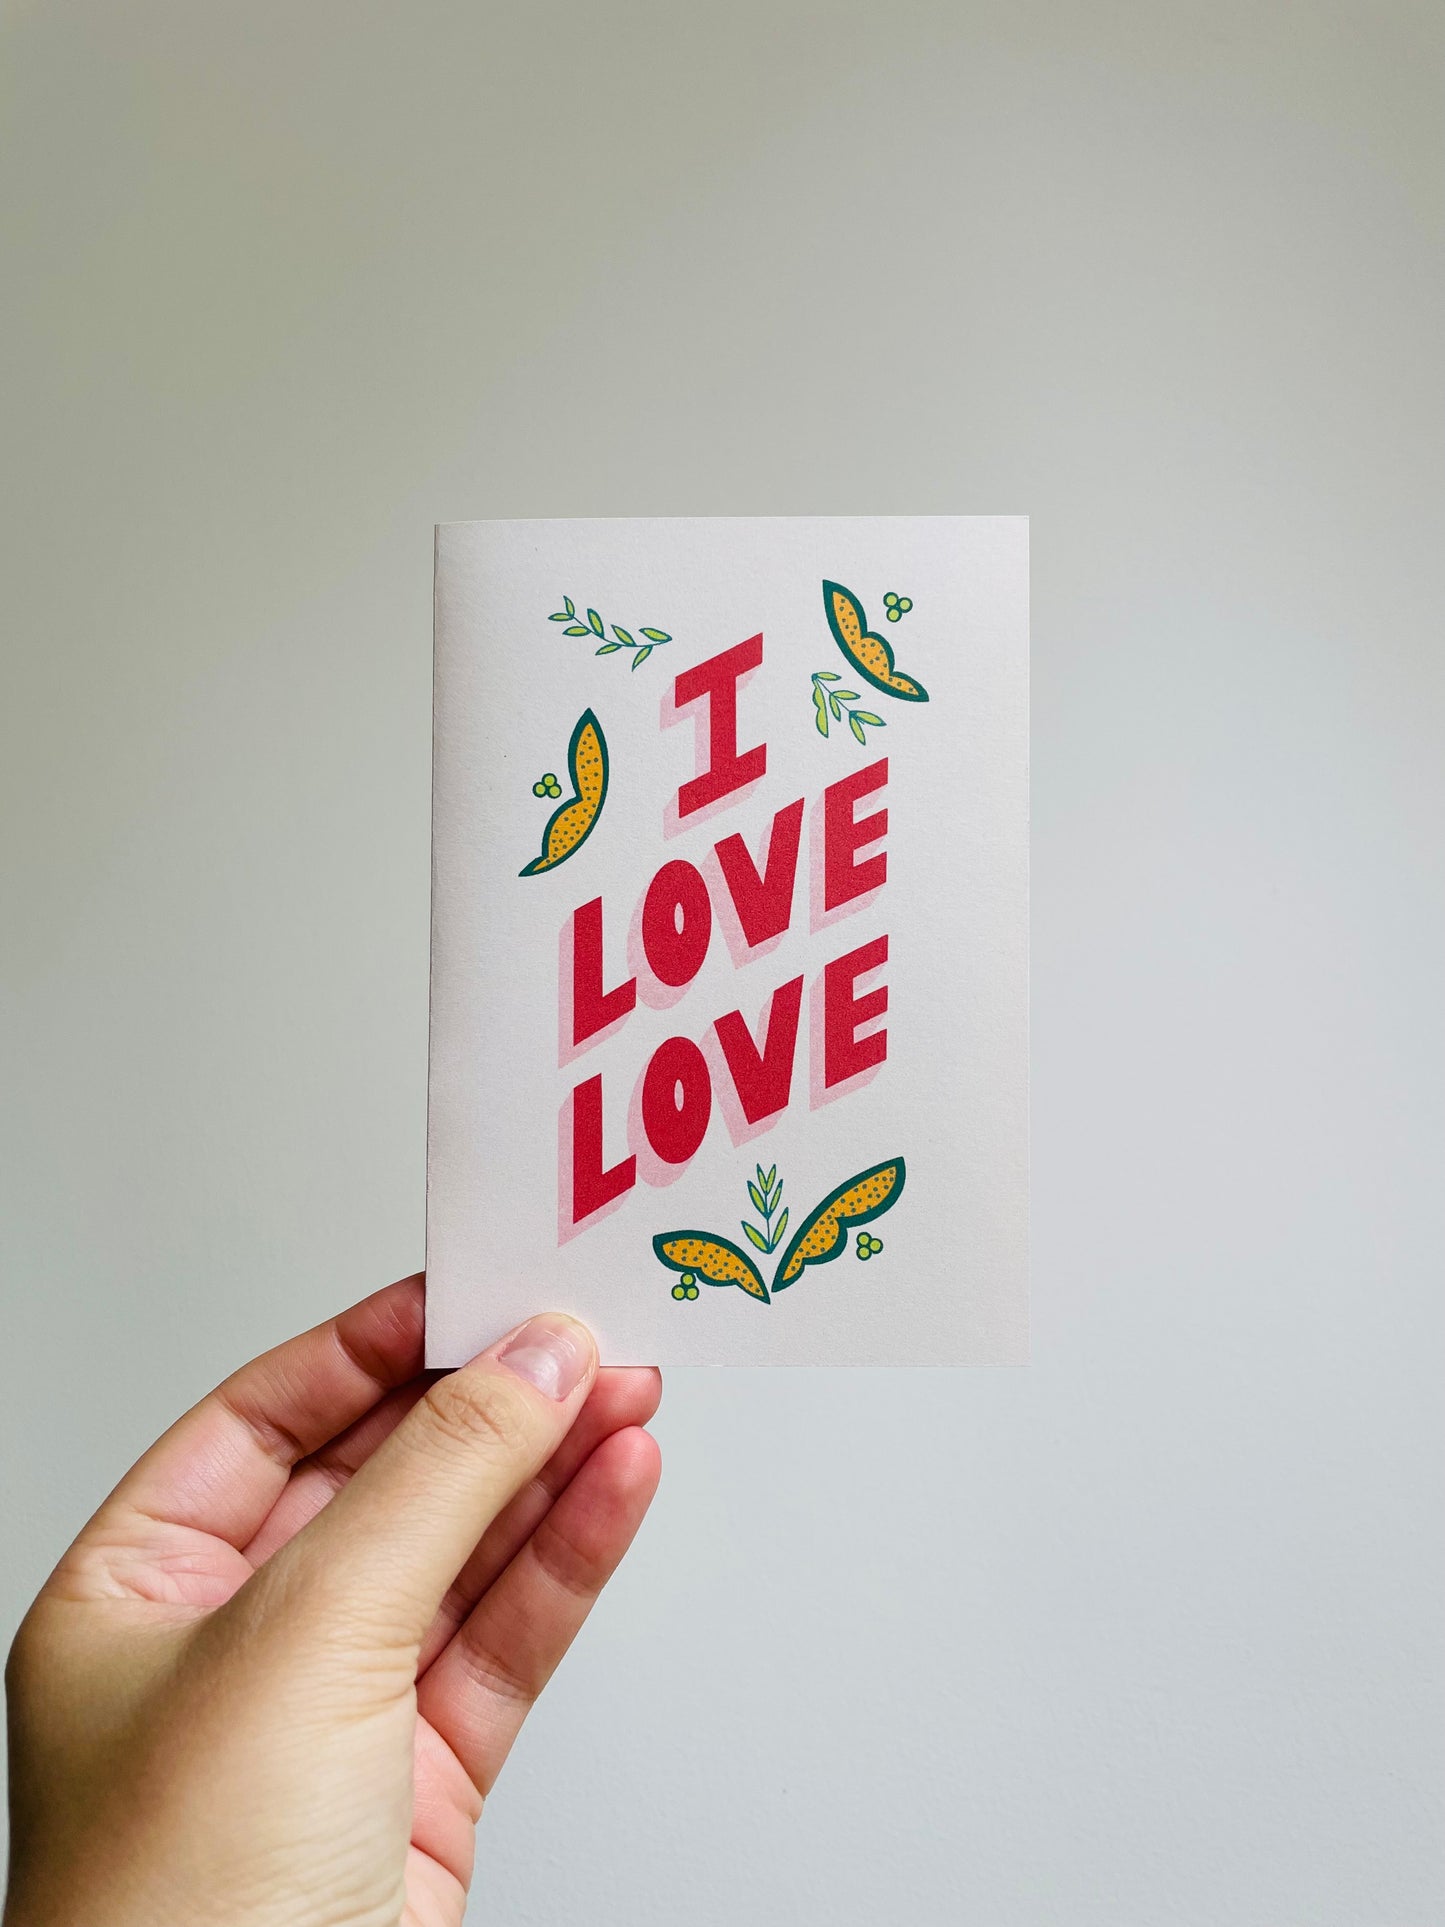 I LOVE LOVE - Wedding Card, Valentine's Day Card, Love Card